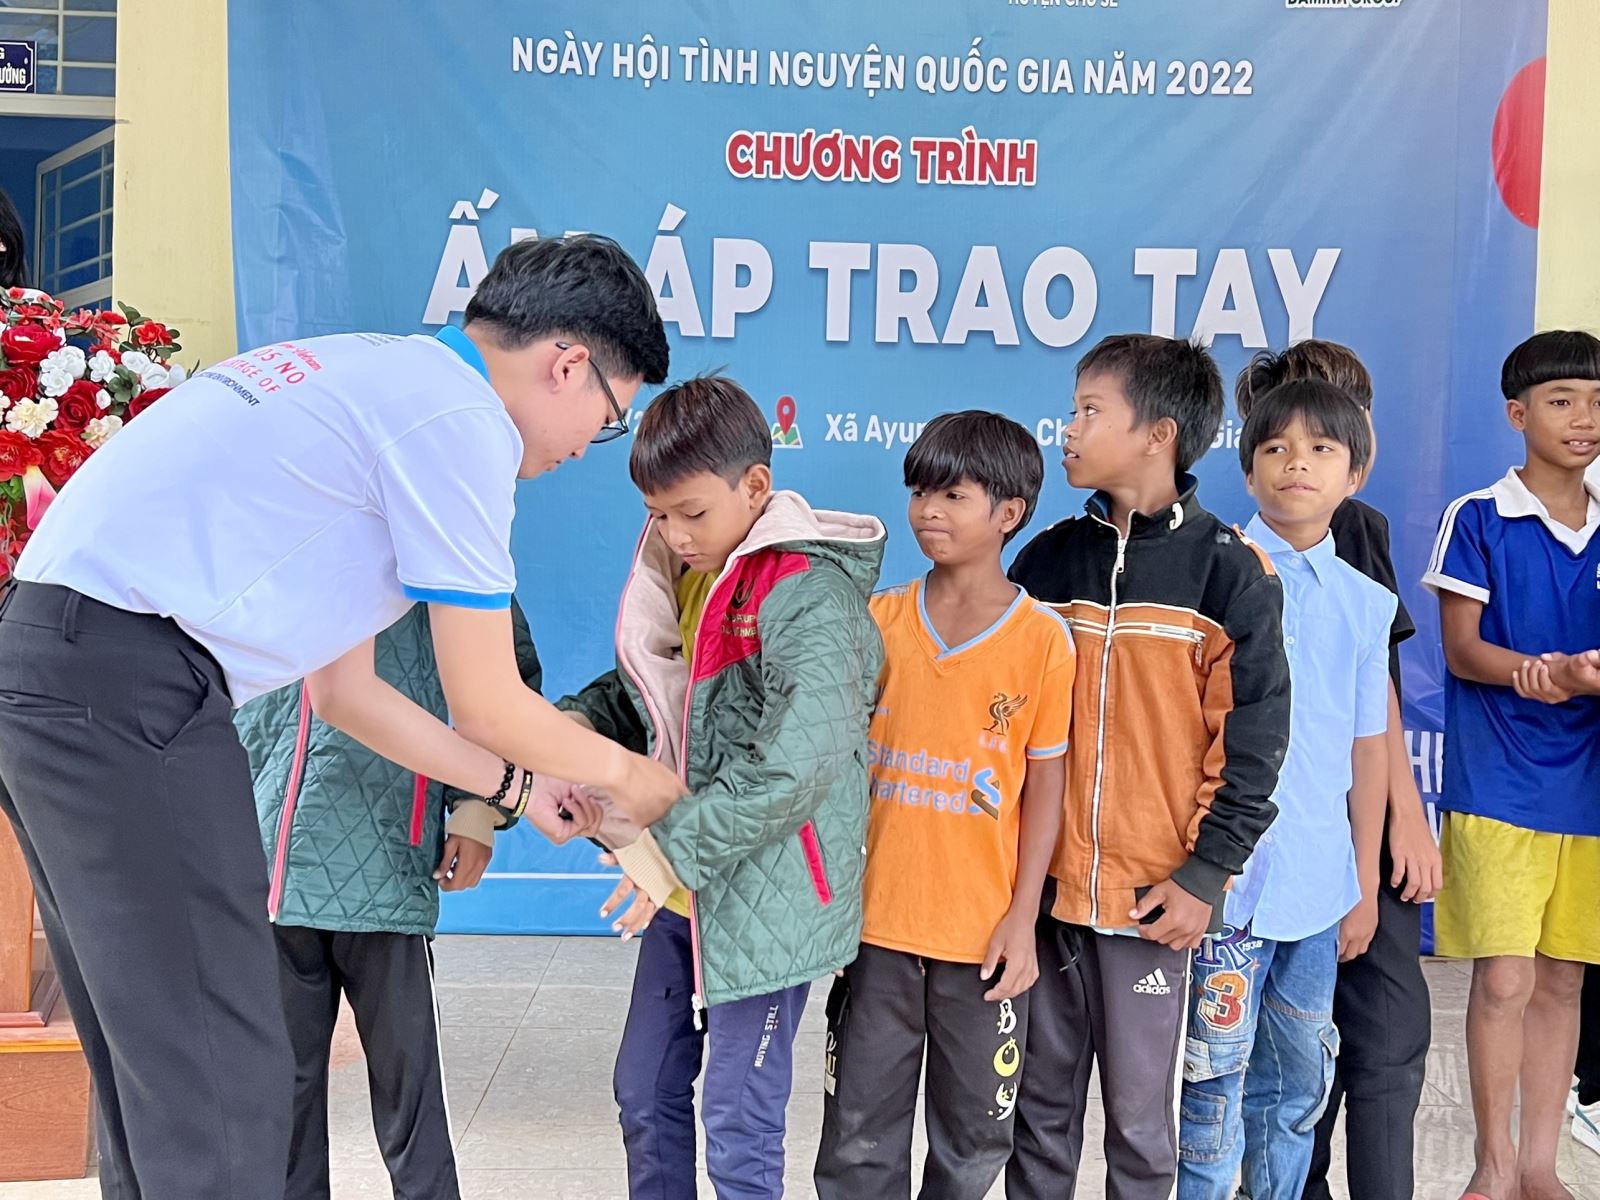 Trao tặng áo ấm cho học sinh tại Trường PTDTBT THCS Phan Đăng Lưu (xã Ayun, huyện Chư Sê, tỉnh Gia Lai)